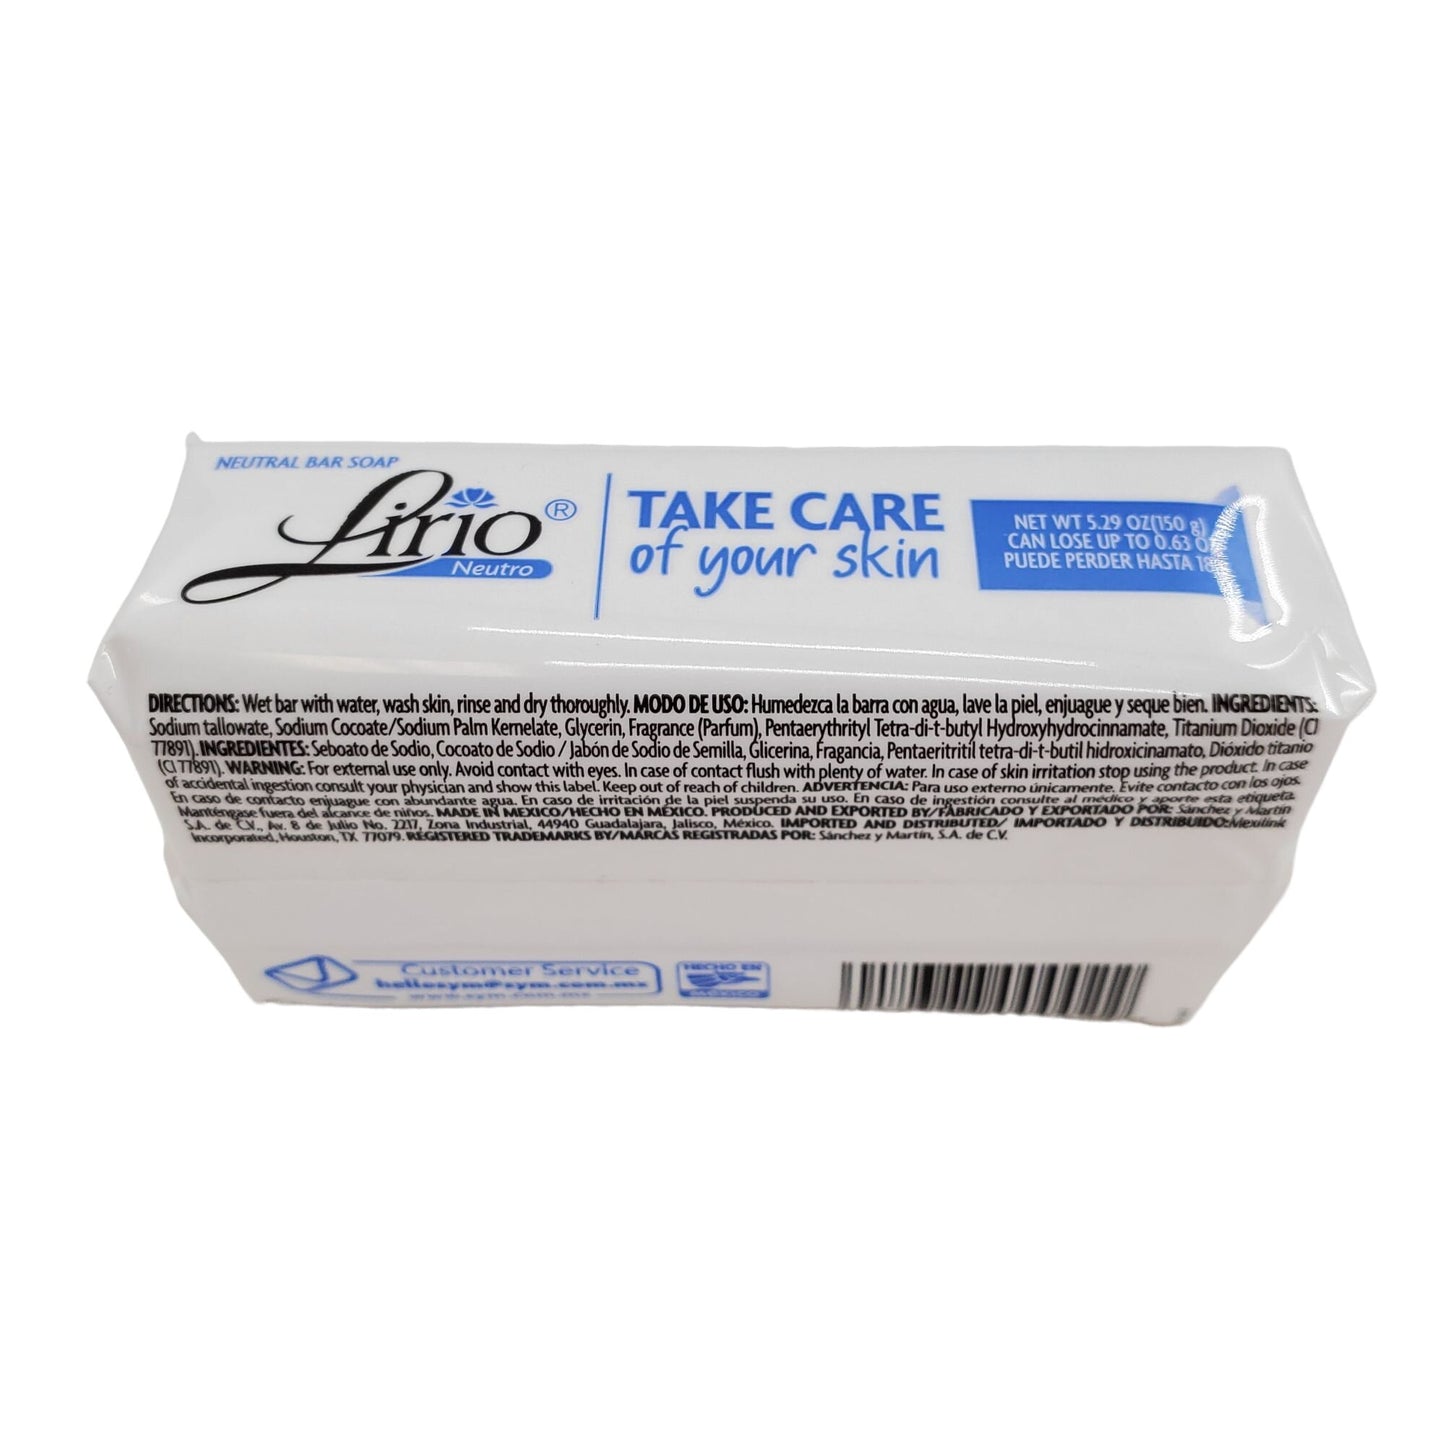 Lirio Neutro Jabon natural Bar soap 5.29OZ (150g) Pack of 1